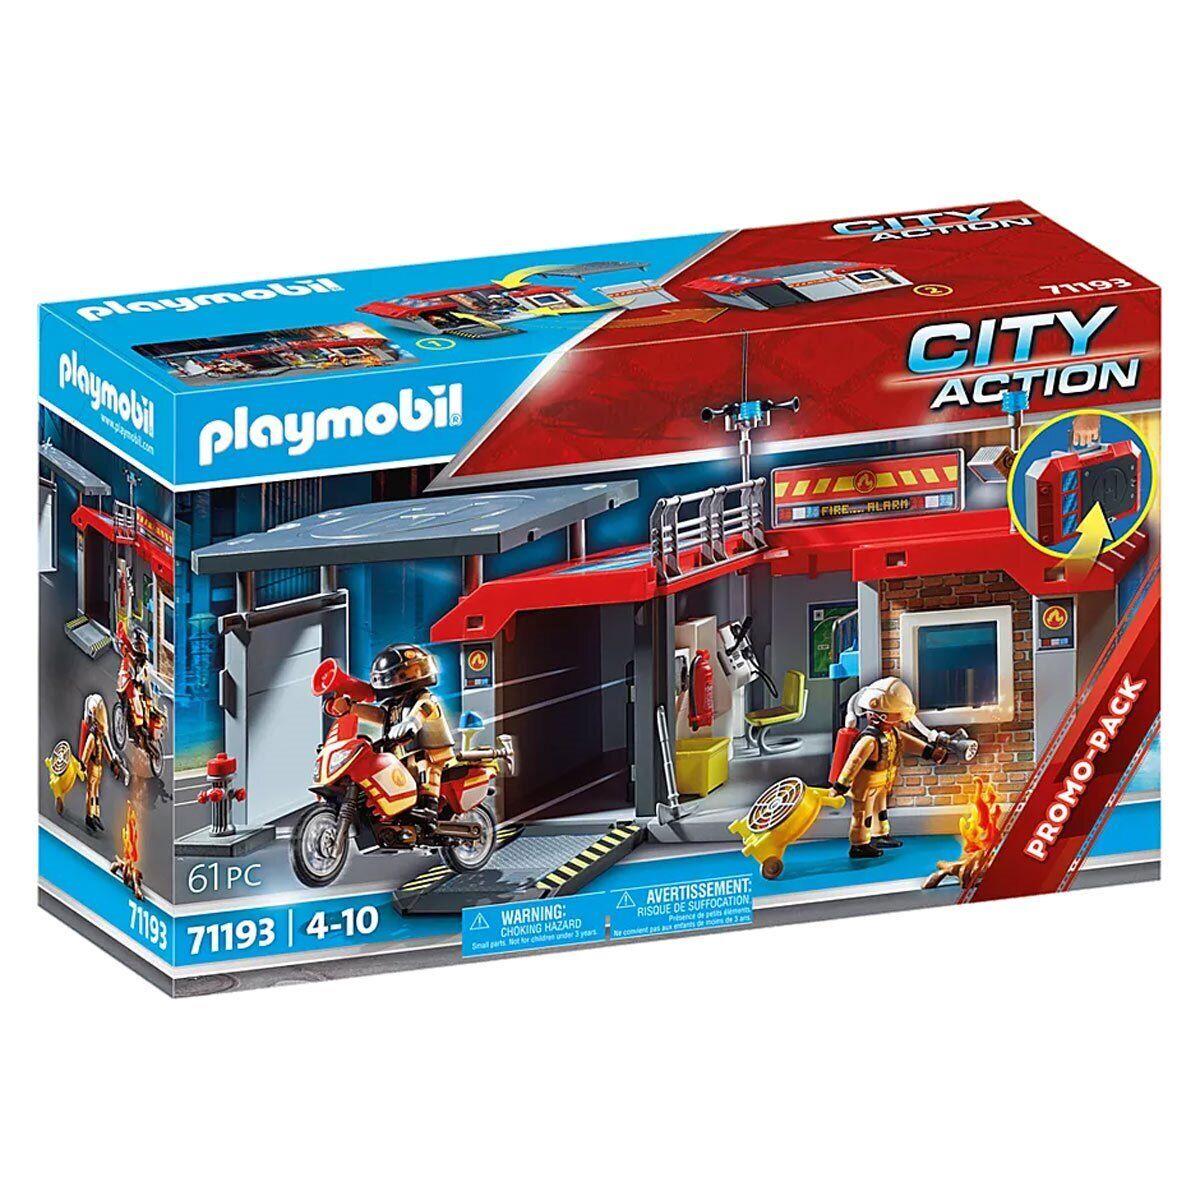 Playmobil 71193 Take Along Fire Station